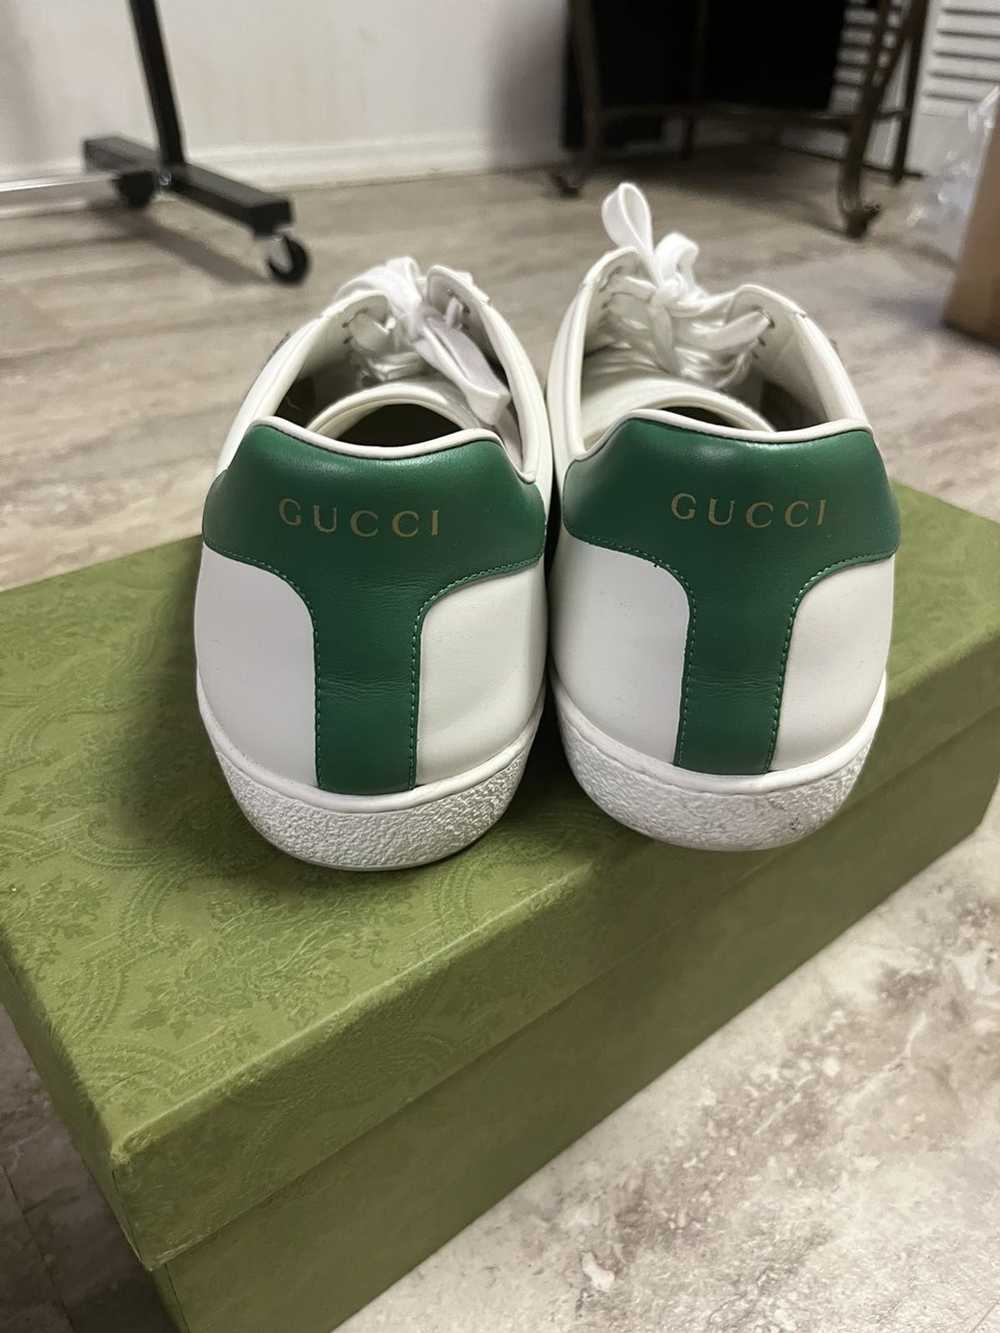 Gucci Gucci bananya shoes - image 2